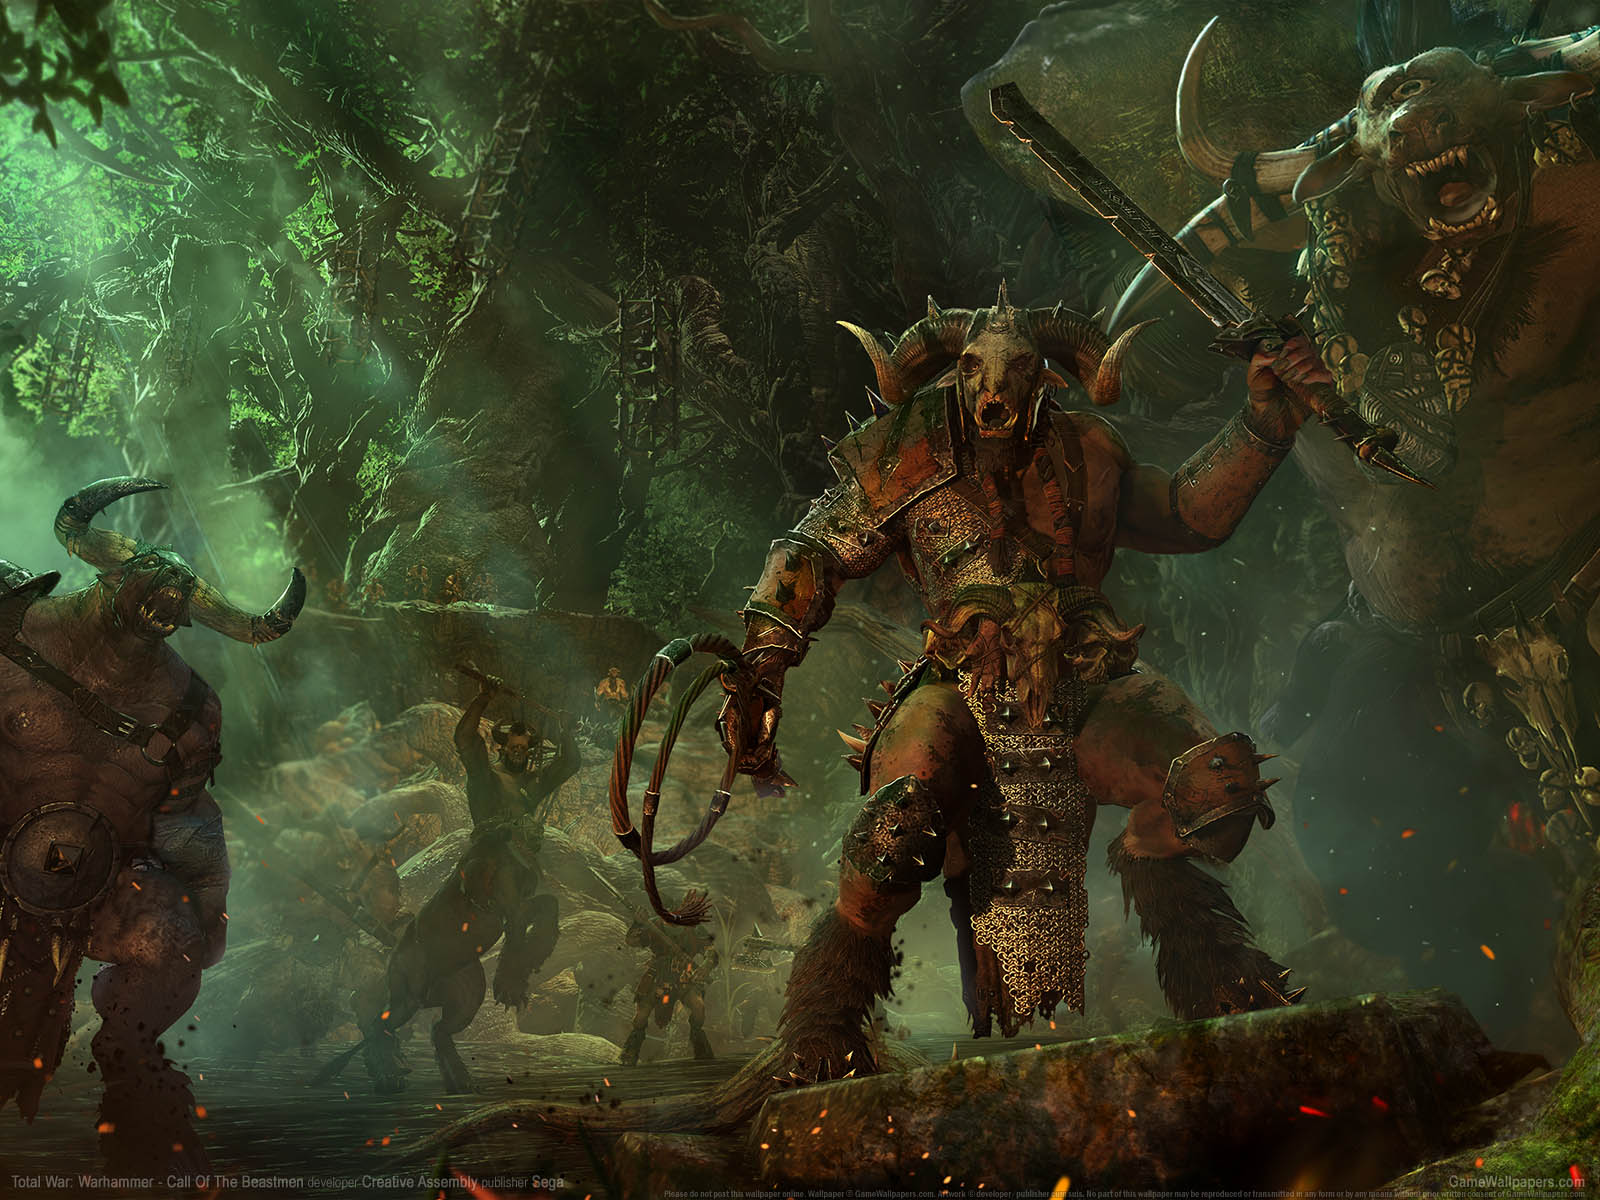 Total War%253A Warhammer - Call of the Beastmen fond d'cran 01 1600x1200